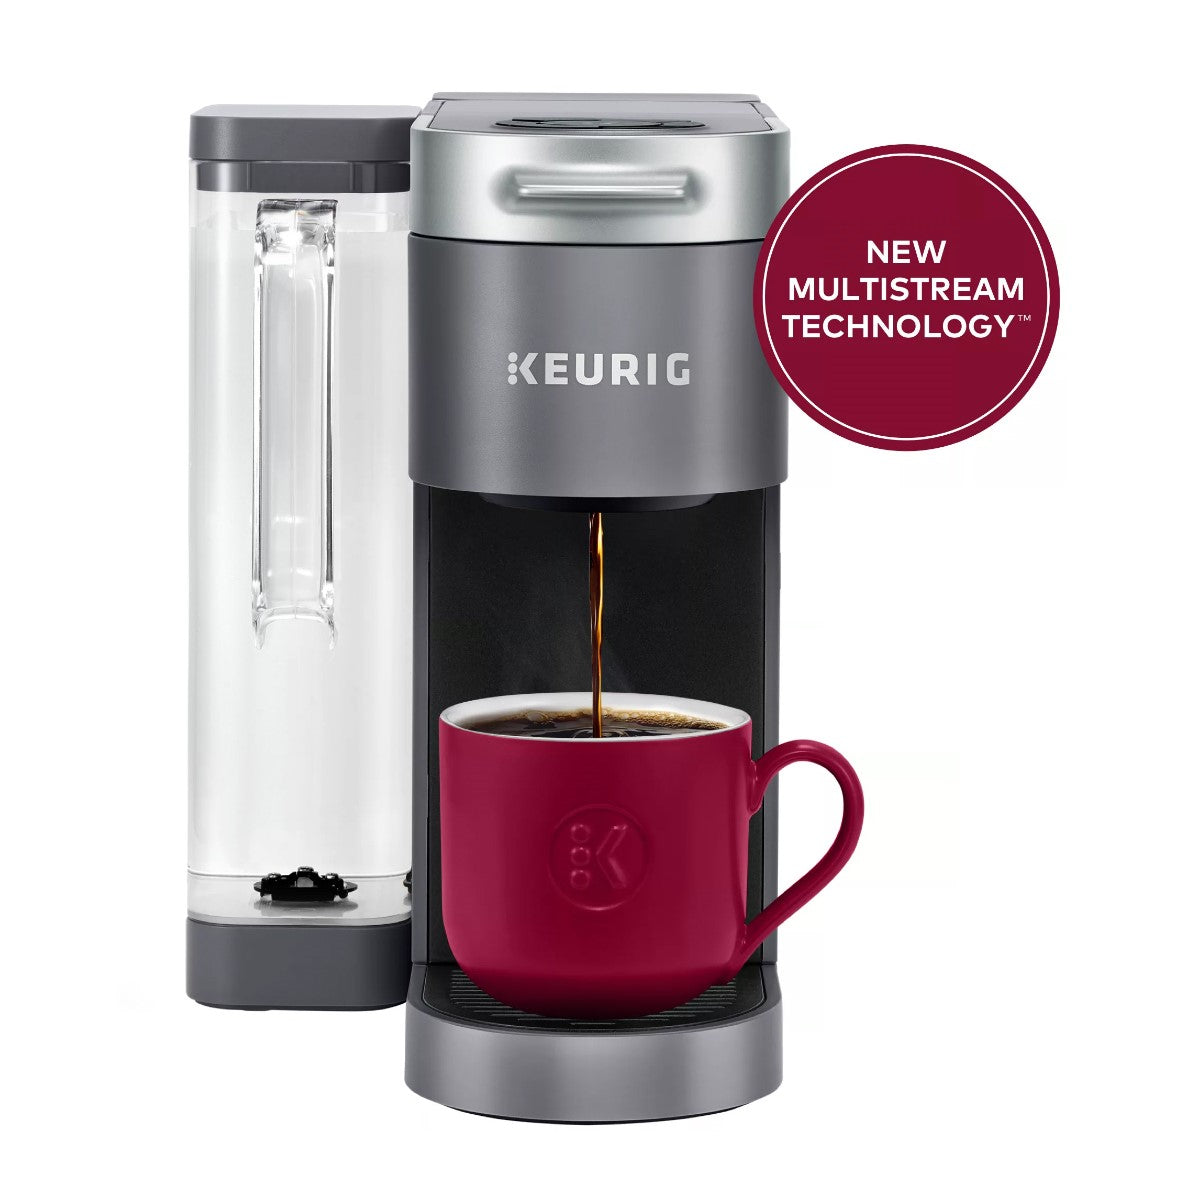 Best kitchen deal: Keurig K-Express coffee maker on sale for $59.99